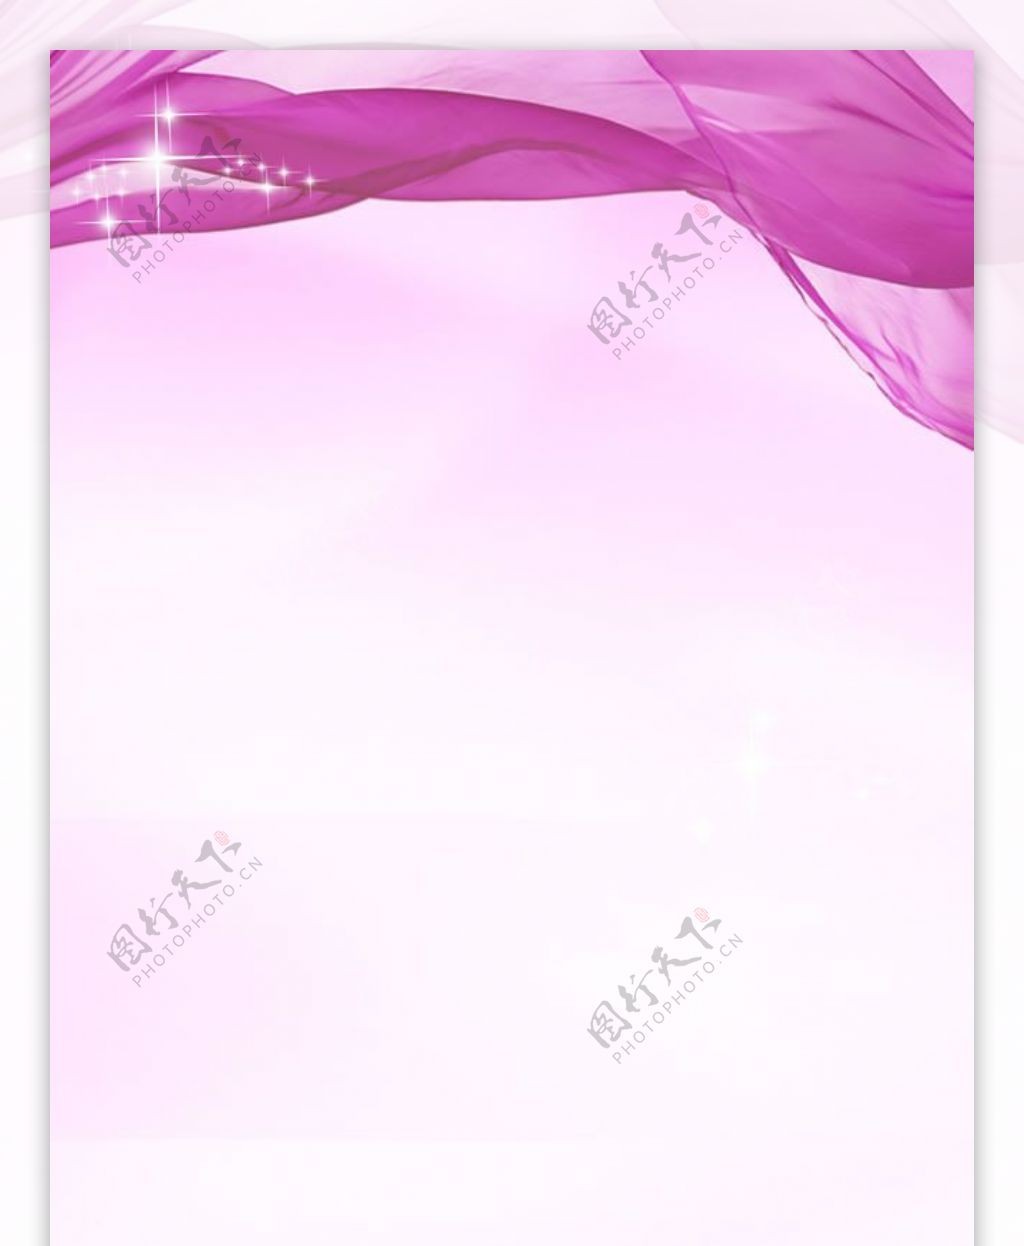 紫色展板背景图片PSD素材